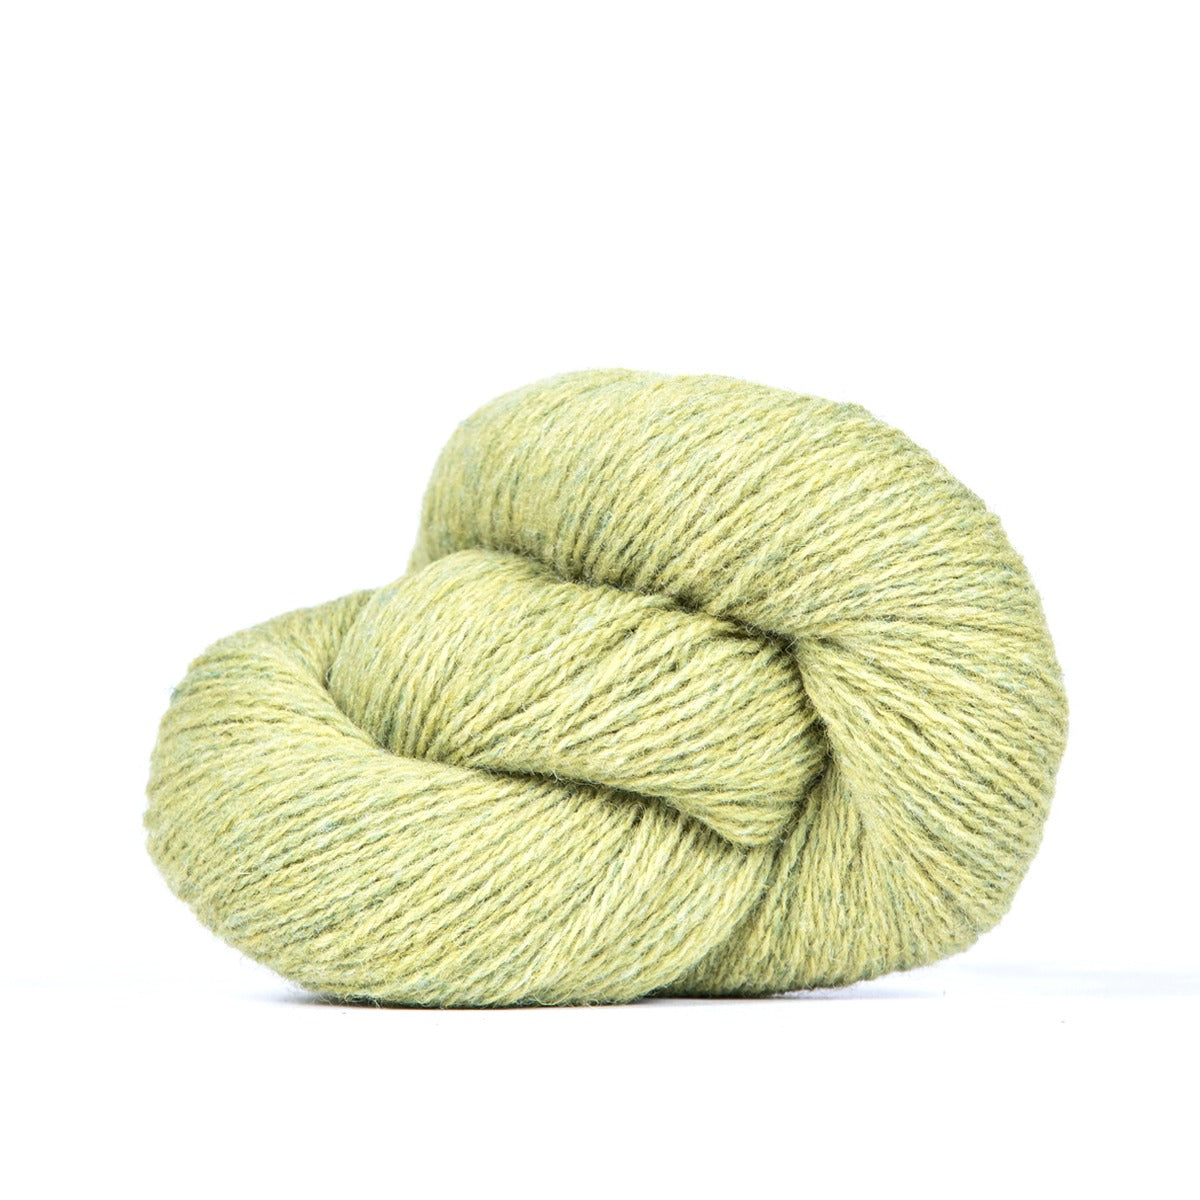 Shale on Buoy DK yarn - BFL/Shetland/Manx Loaghtan wool - 250 yd